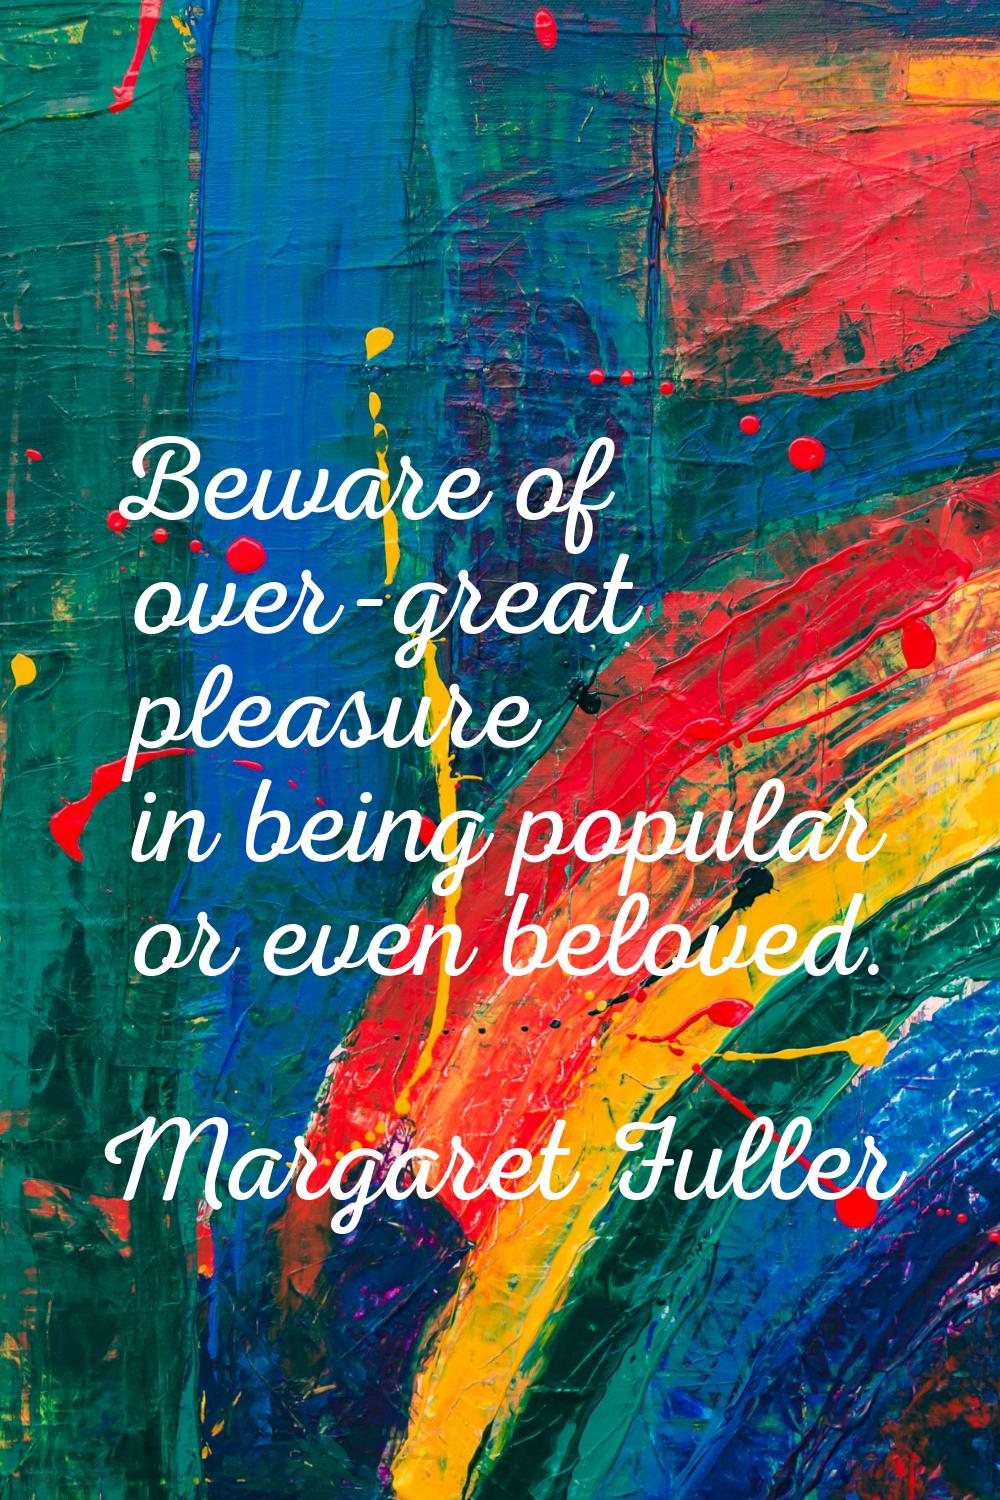 Beware of over-great pleasure in being popular or even beloved.